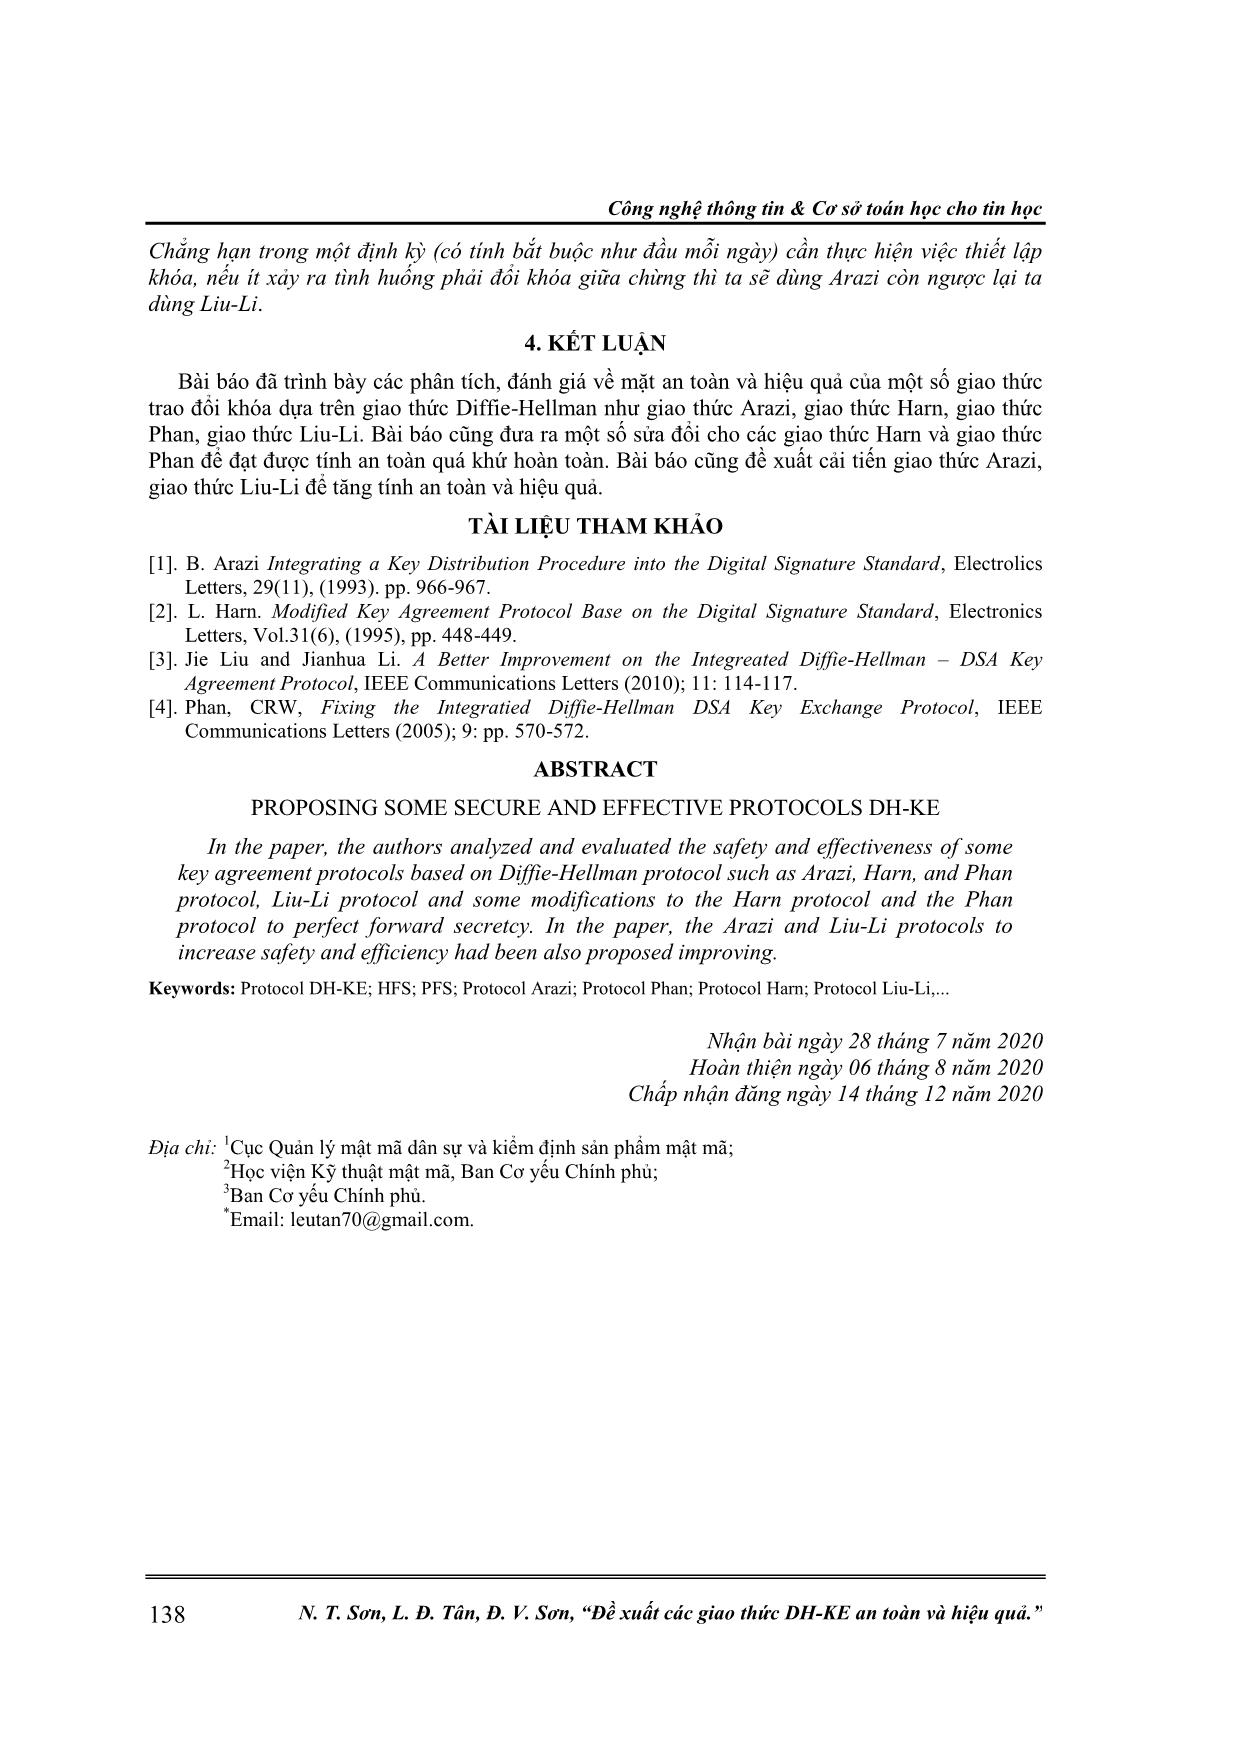 Đề xuất các giao thức DH-KE an toàn và hiệu quả trang 7